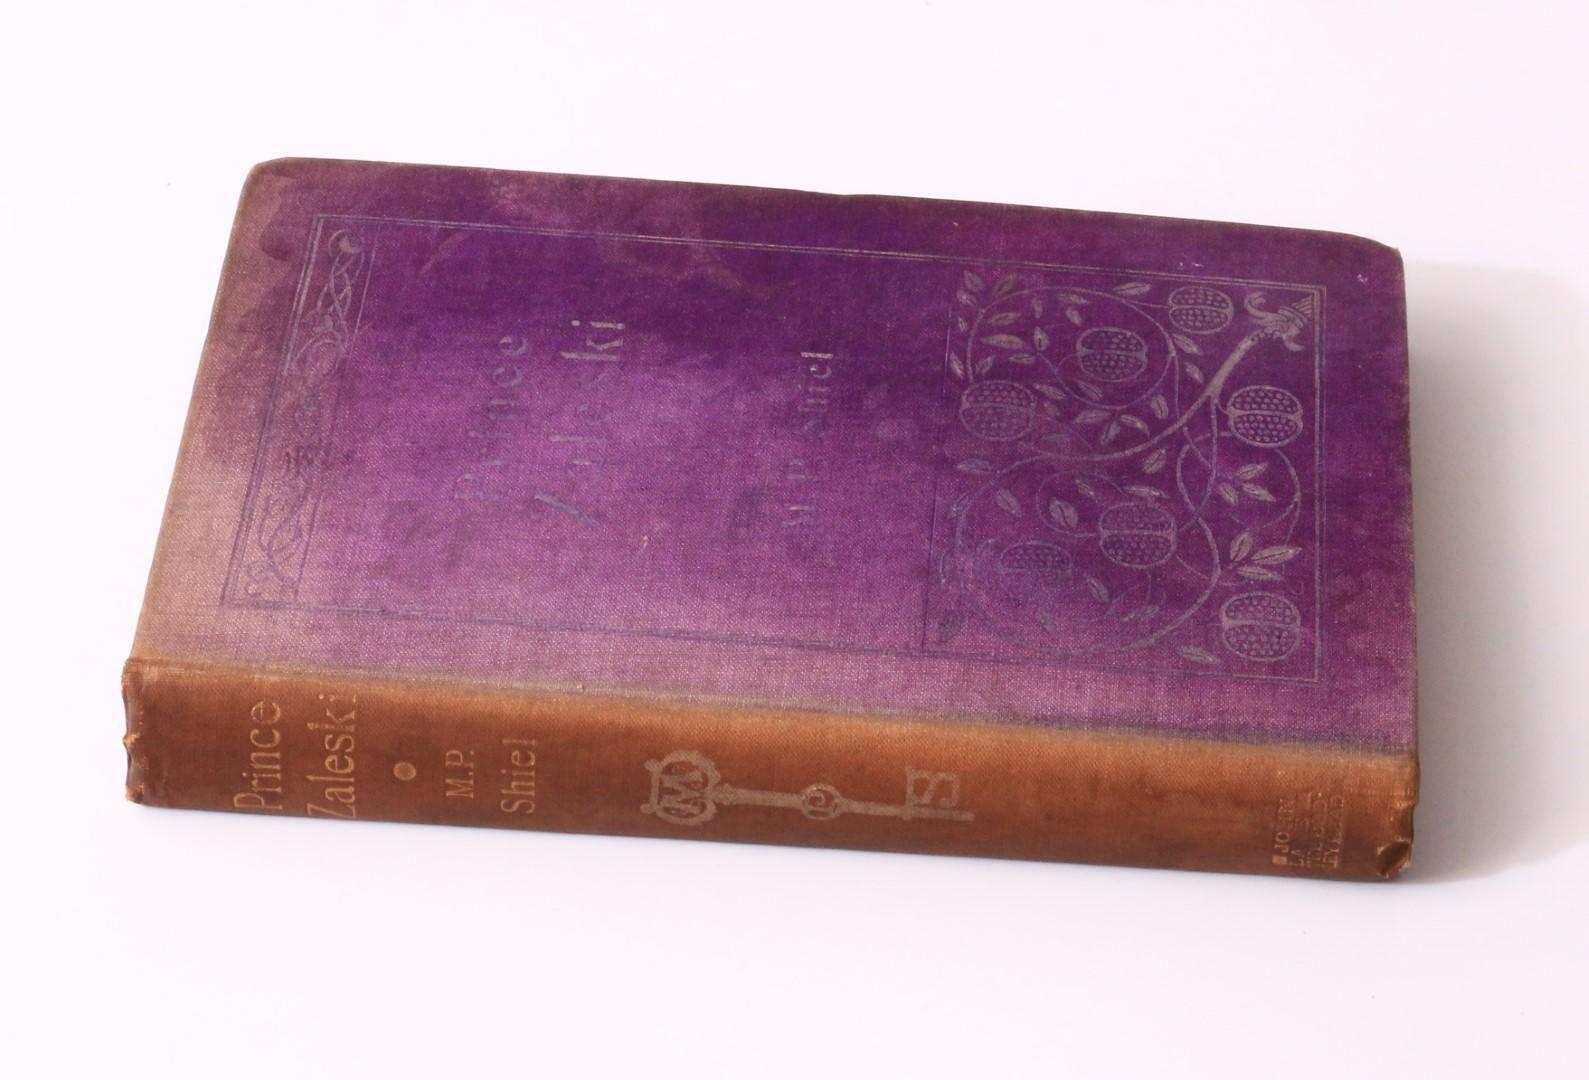 M.P. Shiel - Prince Zaleski - John Lane, 1895, First Edition.